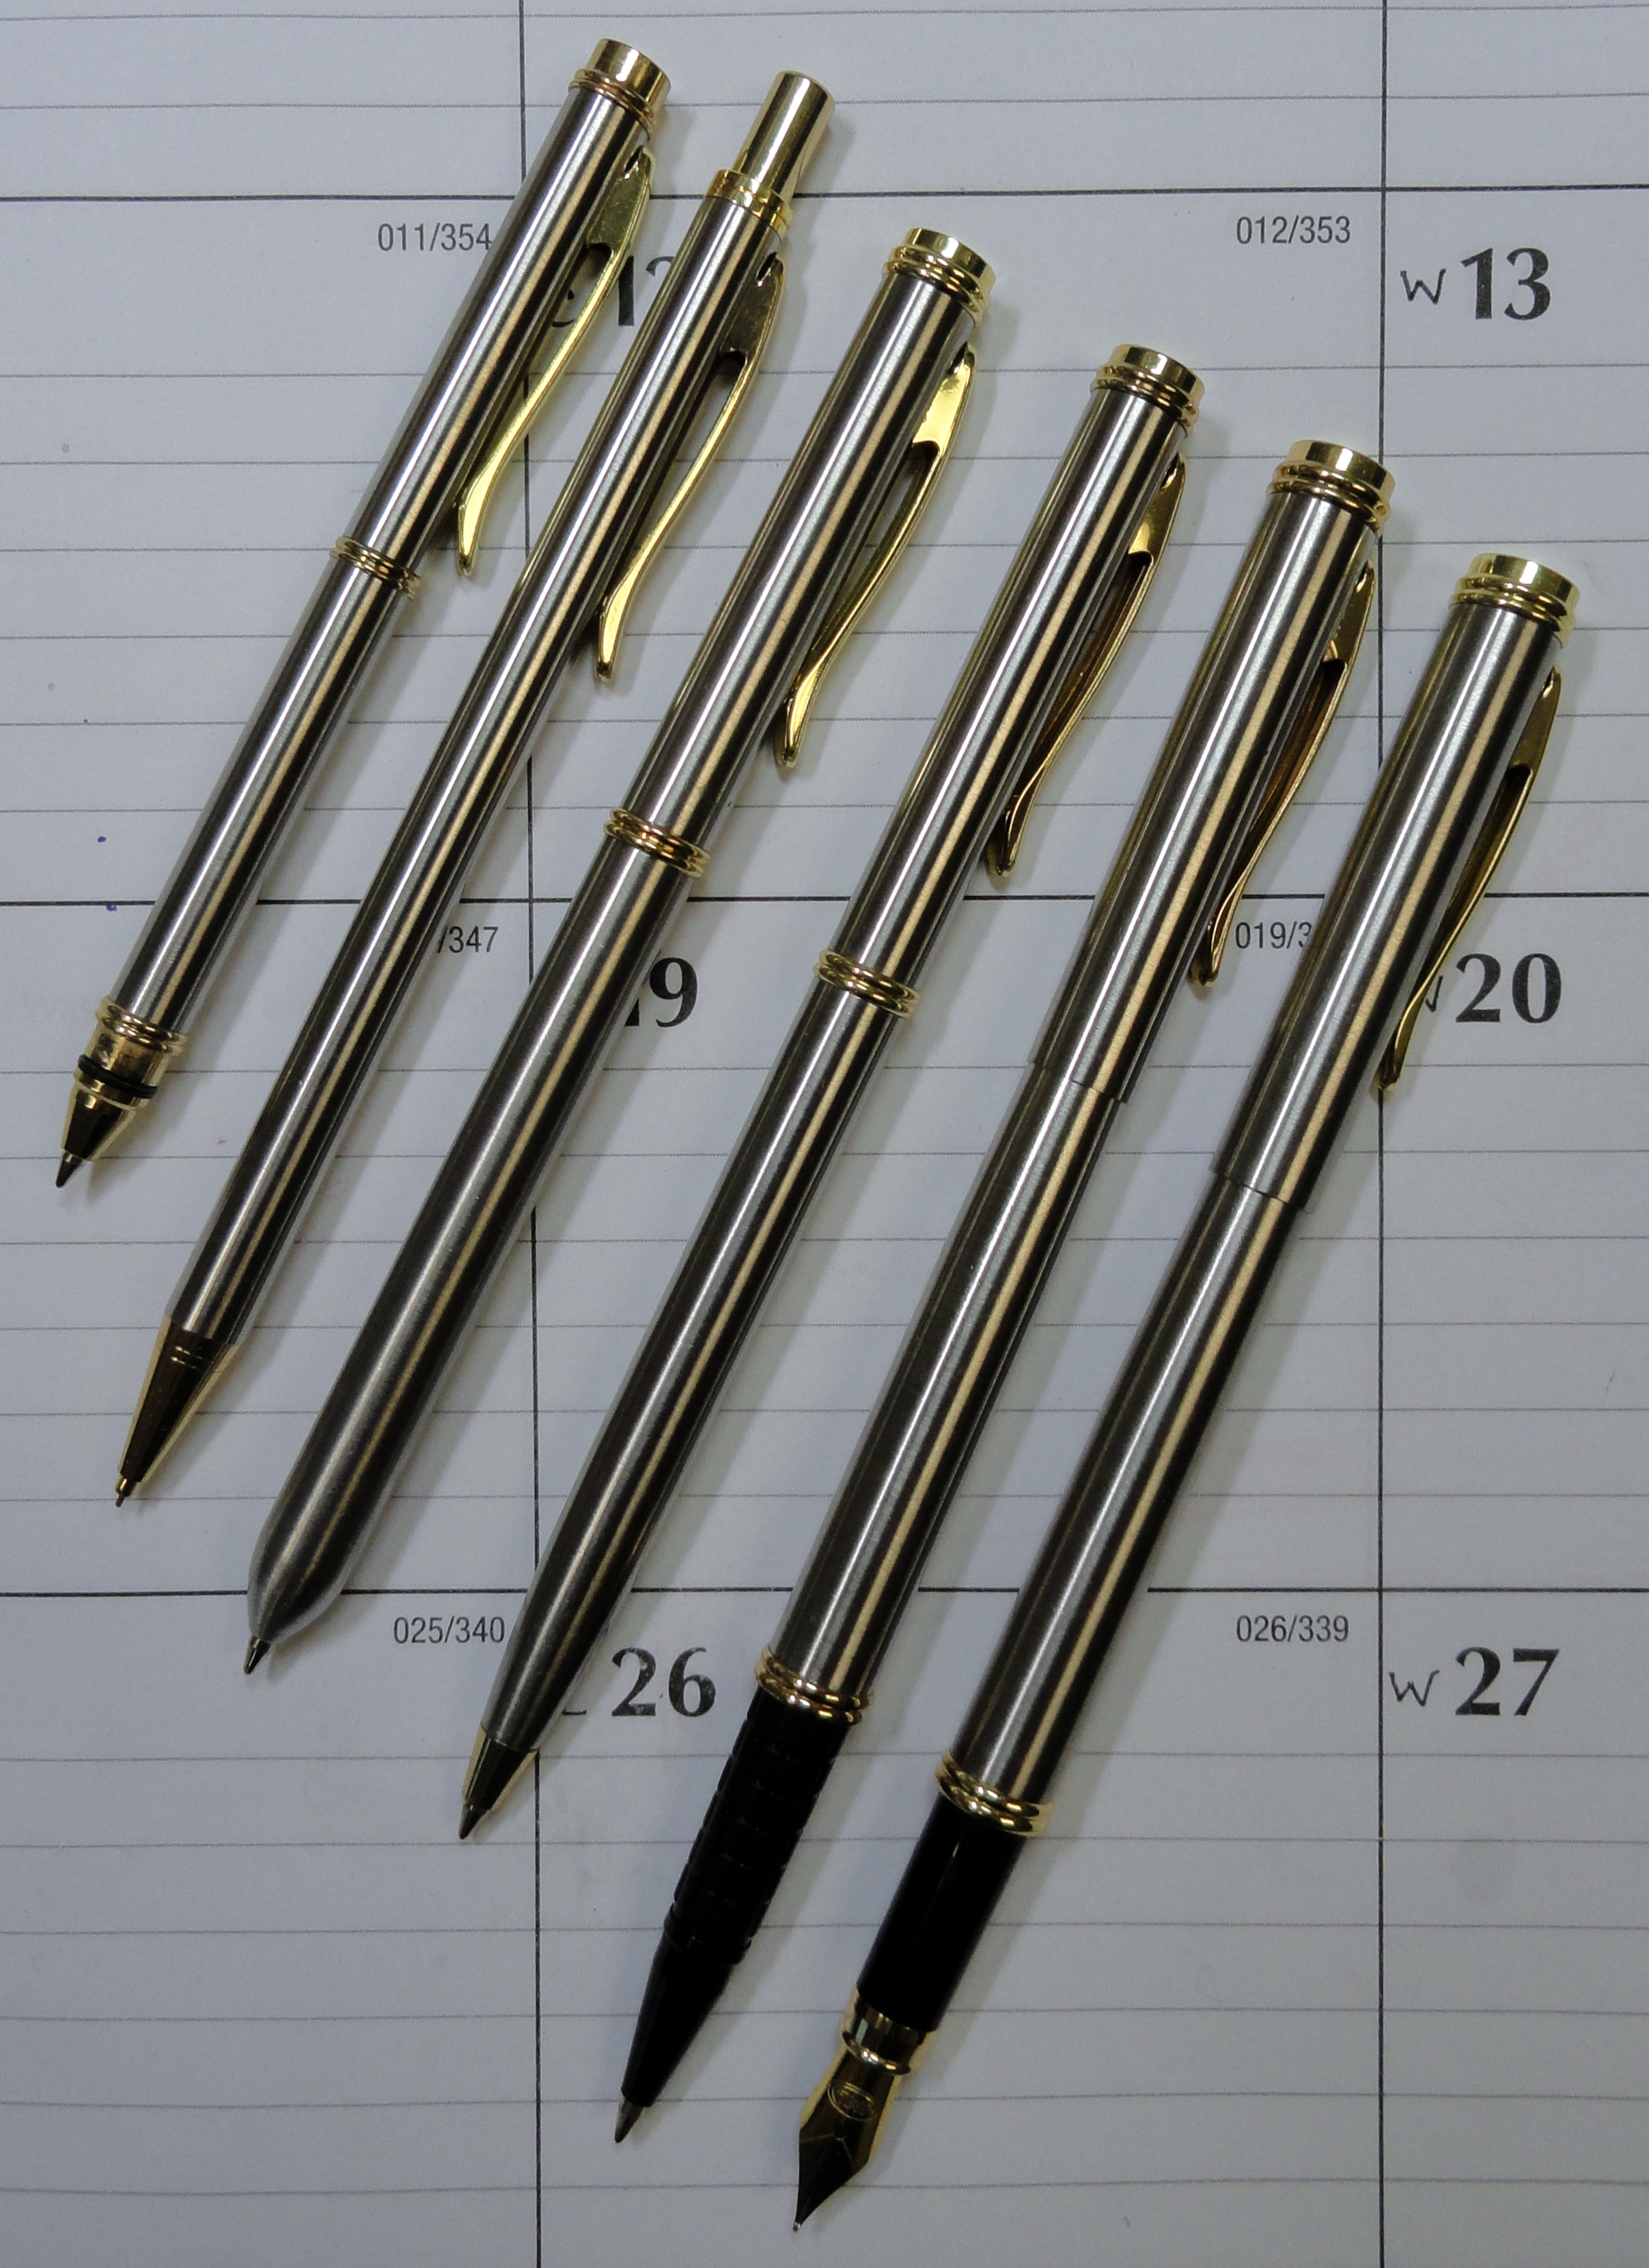 jml classic pen set instructions